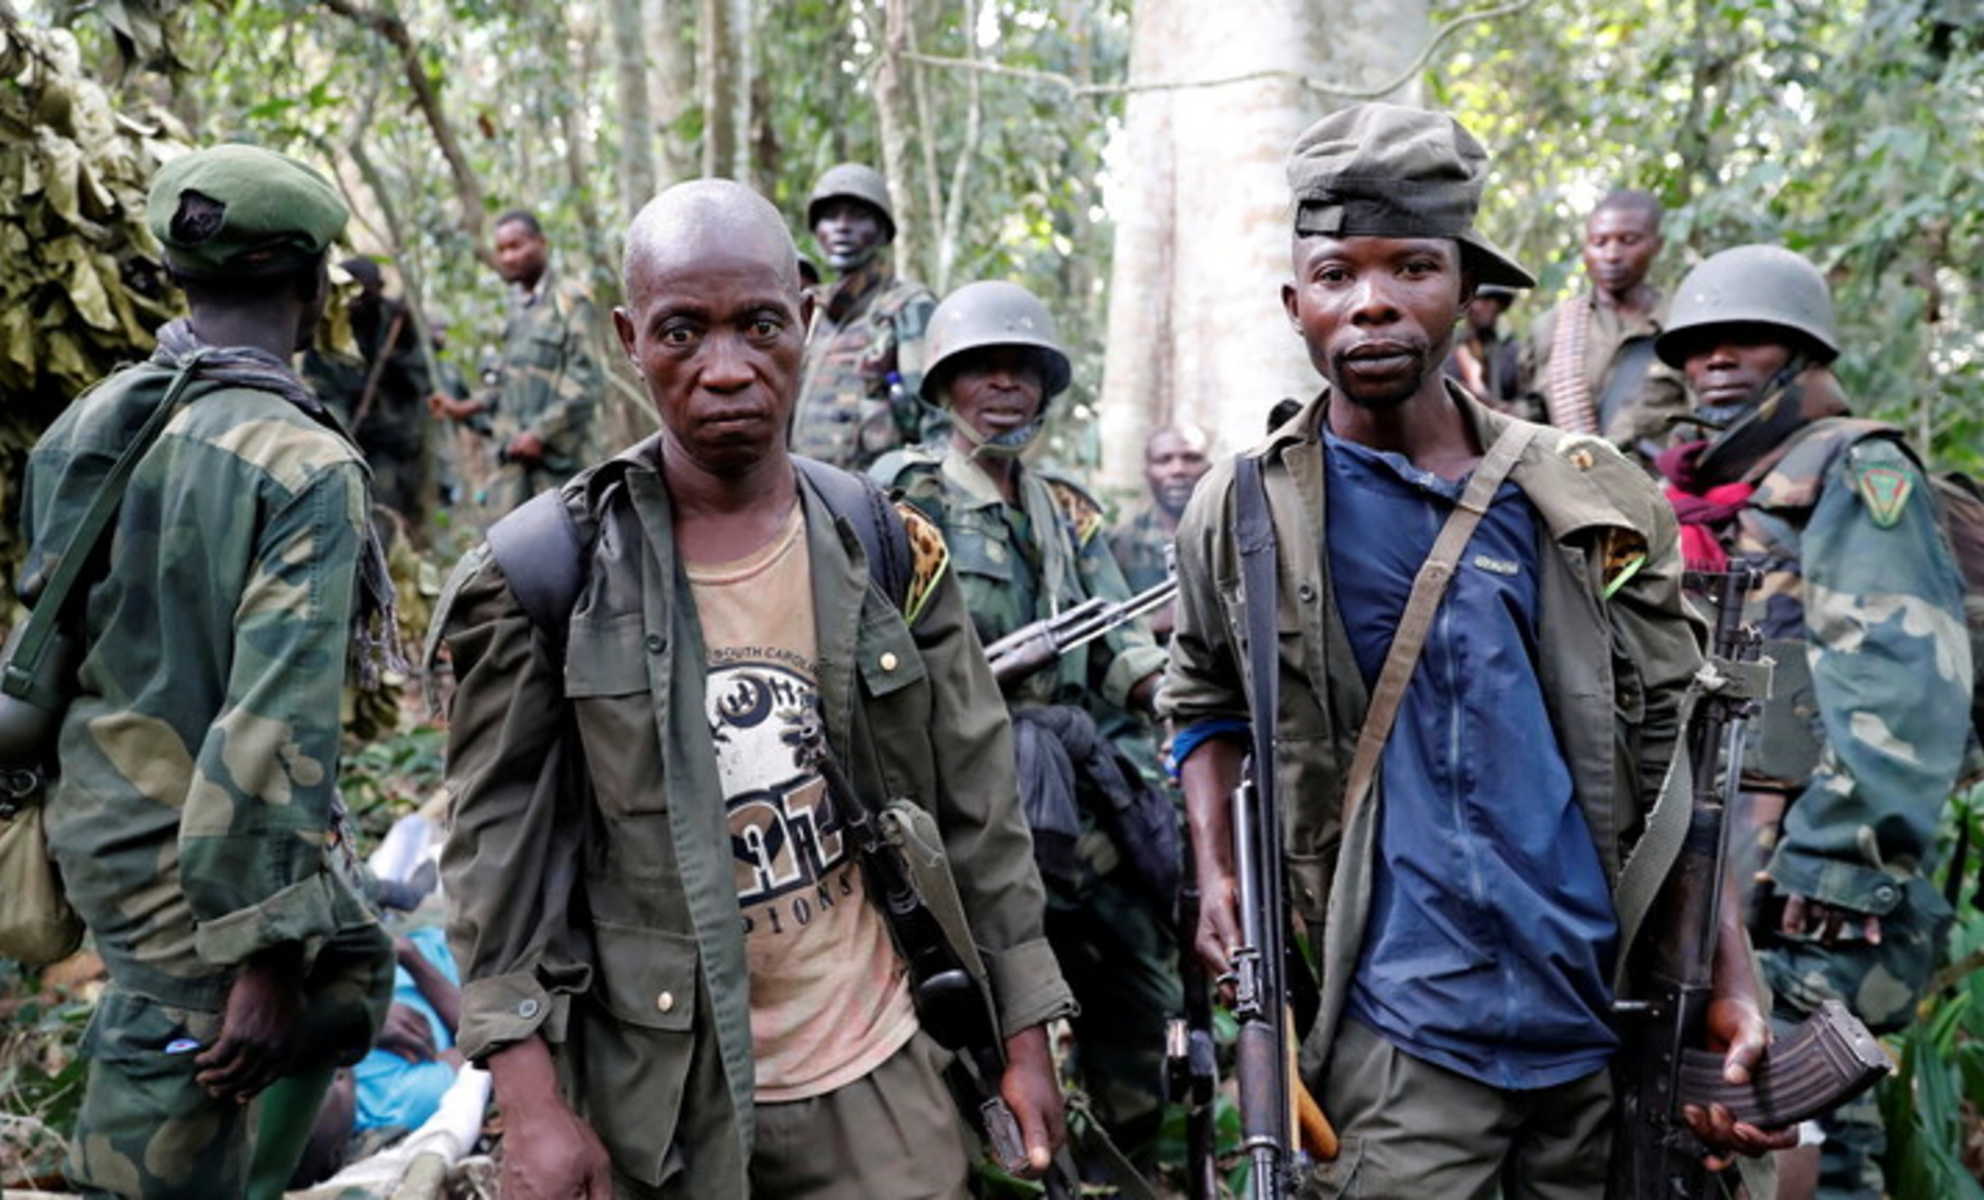 القبض في أوغندا على خبير تصنيع قنابل جماعة متمردة متحالفة مع "داعش".